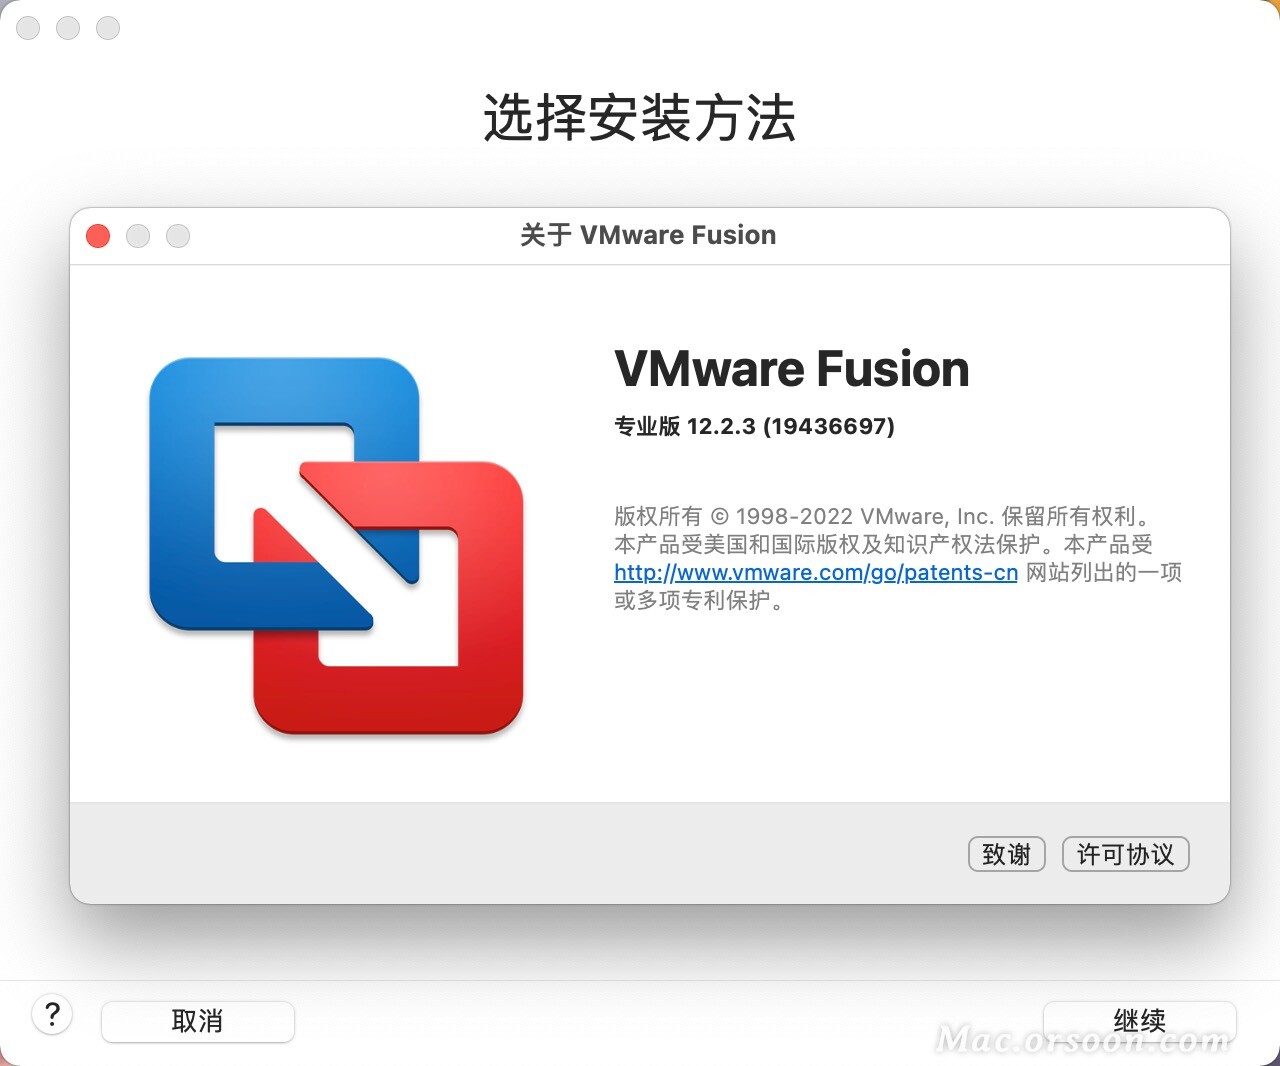 vmware fusion m1 pro